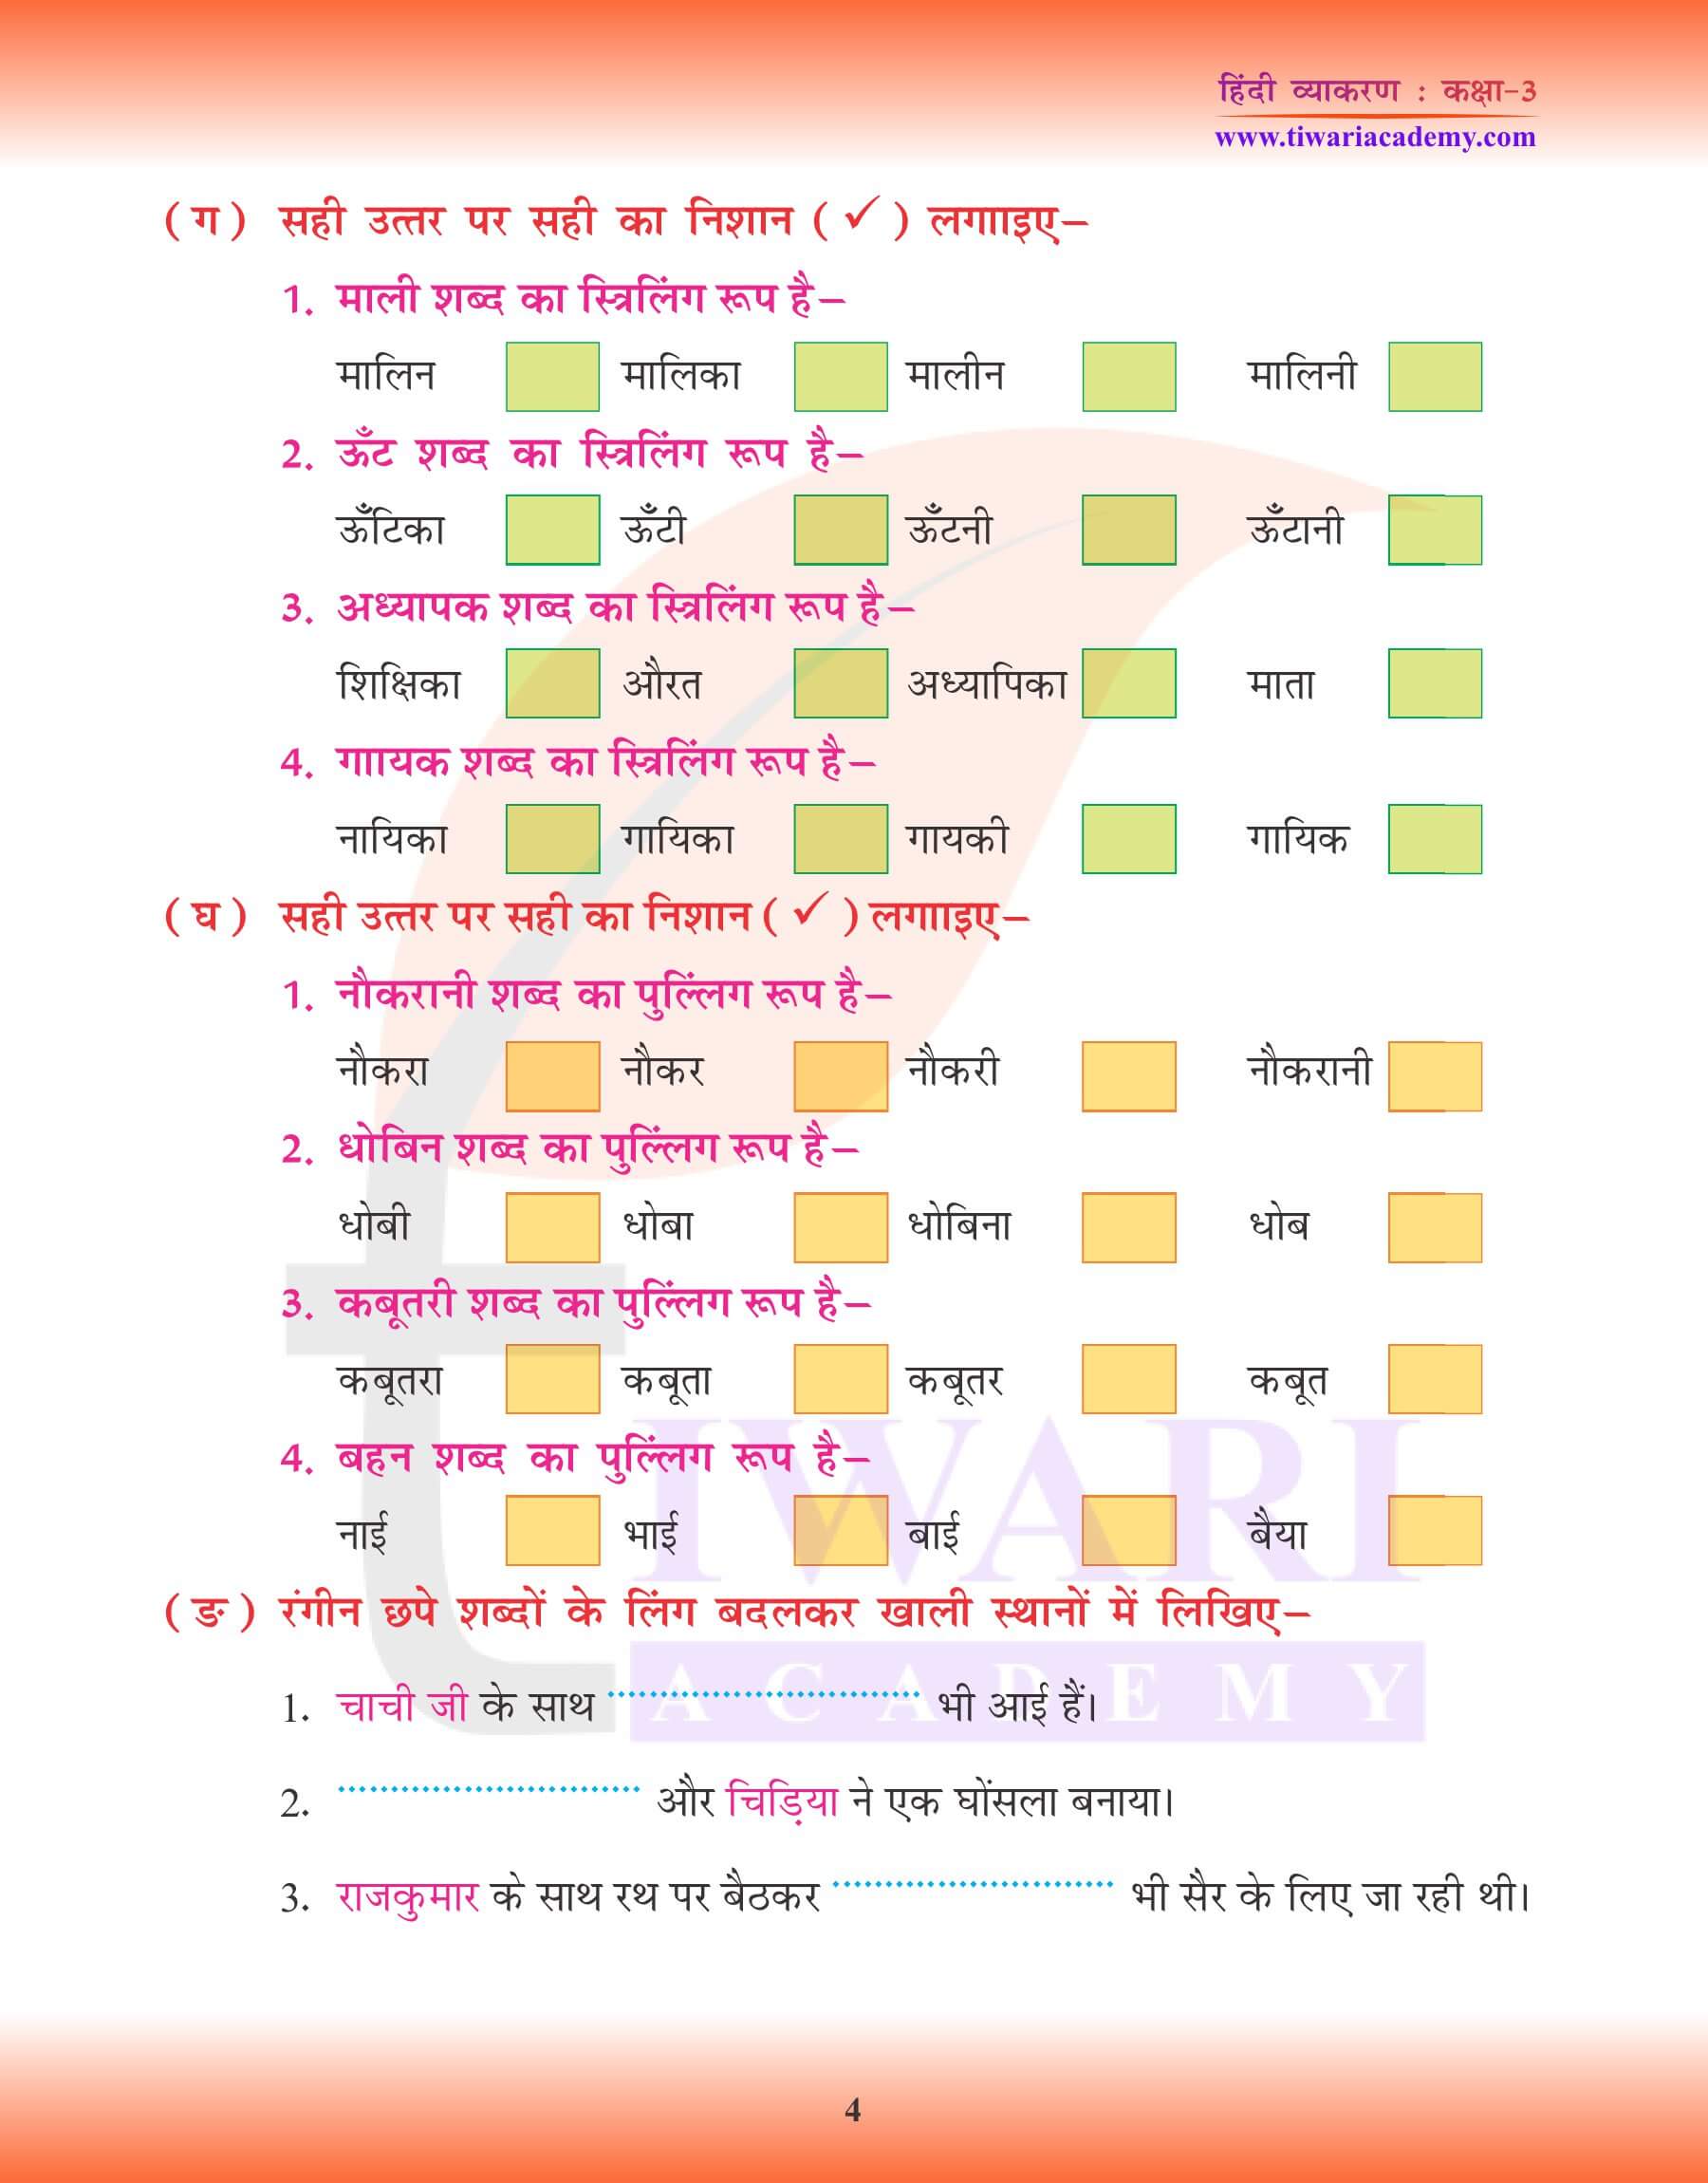 कक्षा 3 हिंदी व्याकरण में लिंग के भेद